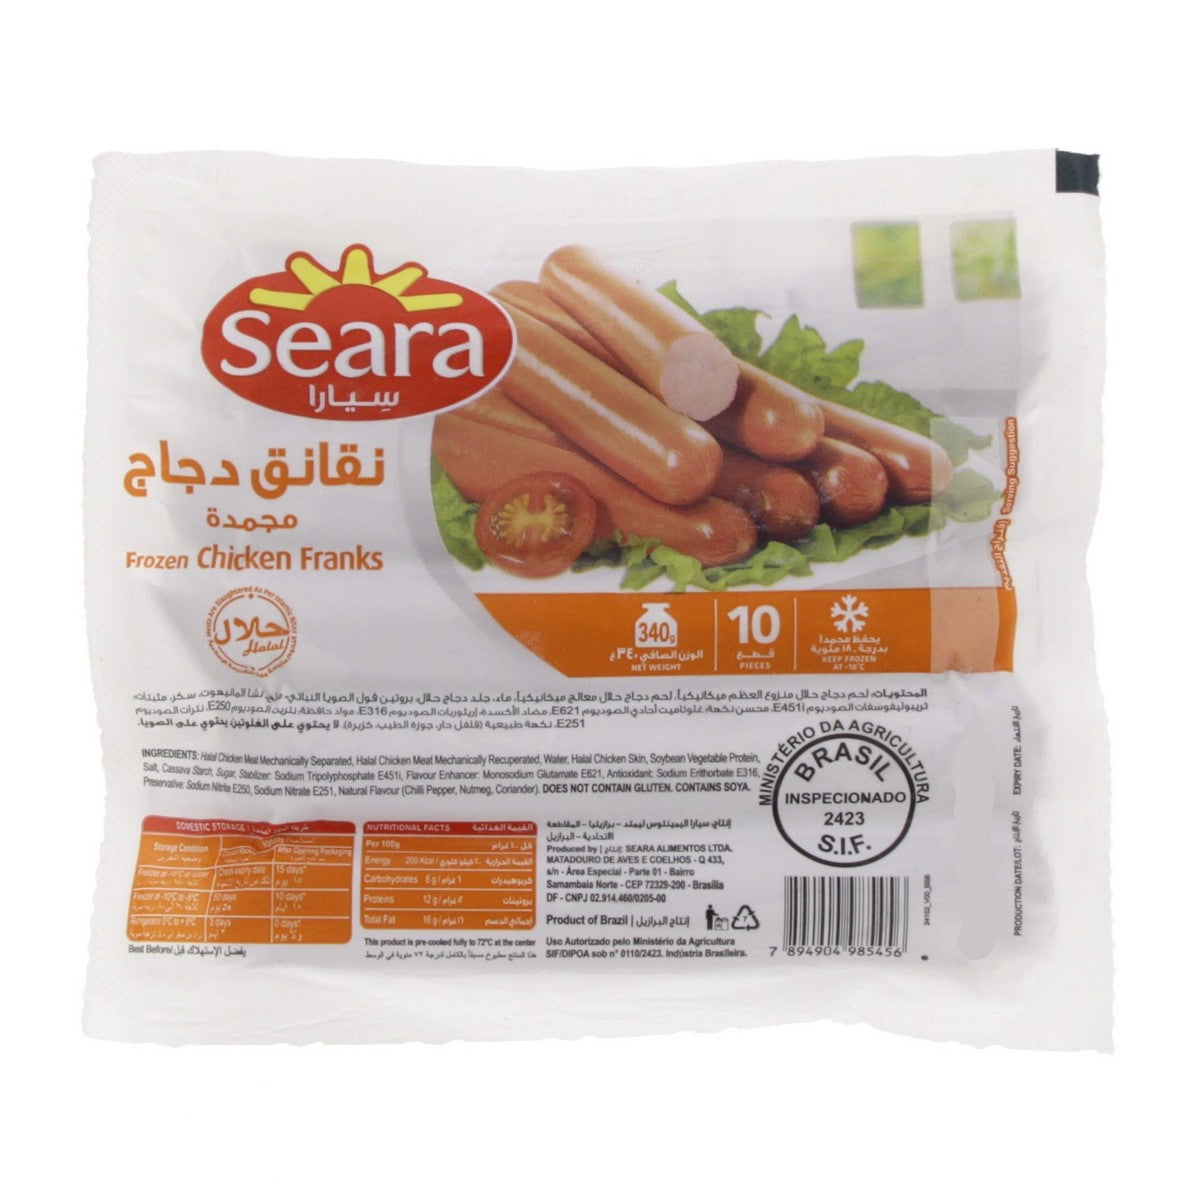 340 gram pack of seara frozen chicken sausages